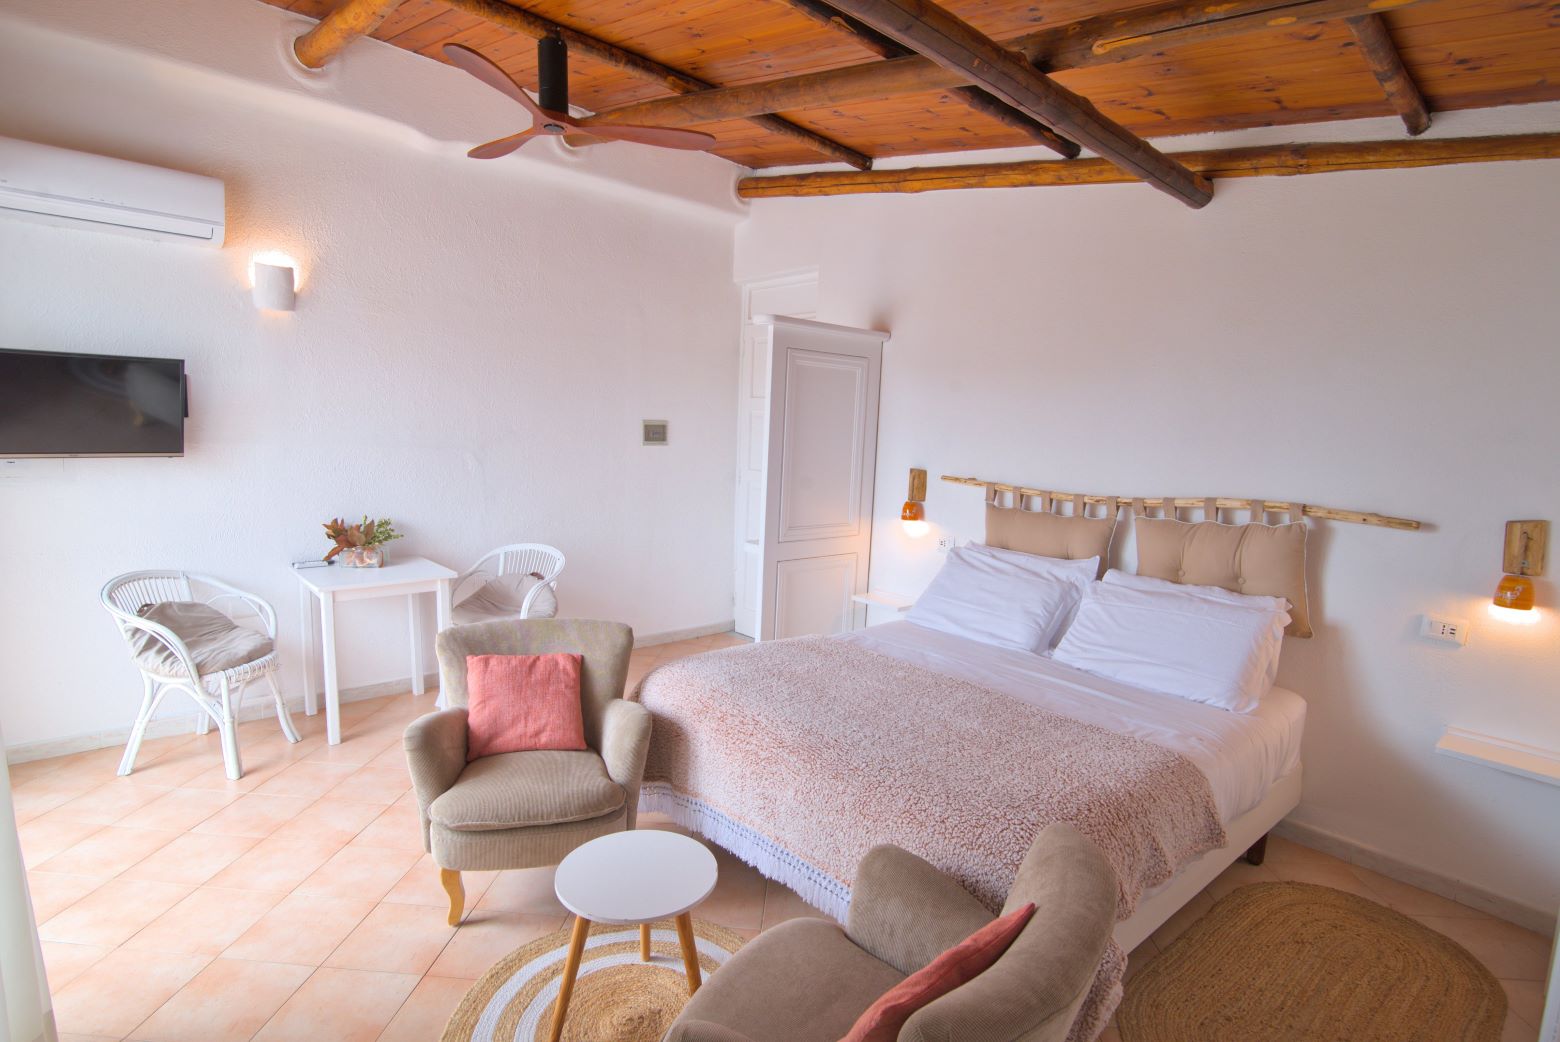 Ischia, Villa, Pool, Apartment, Room, mediterranean, boutique, hotel